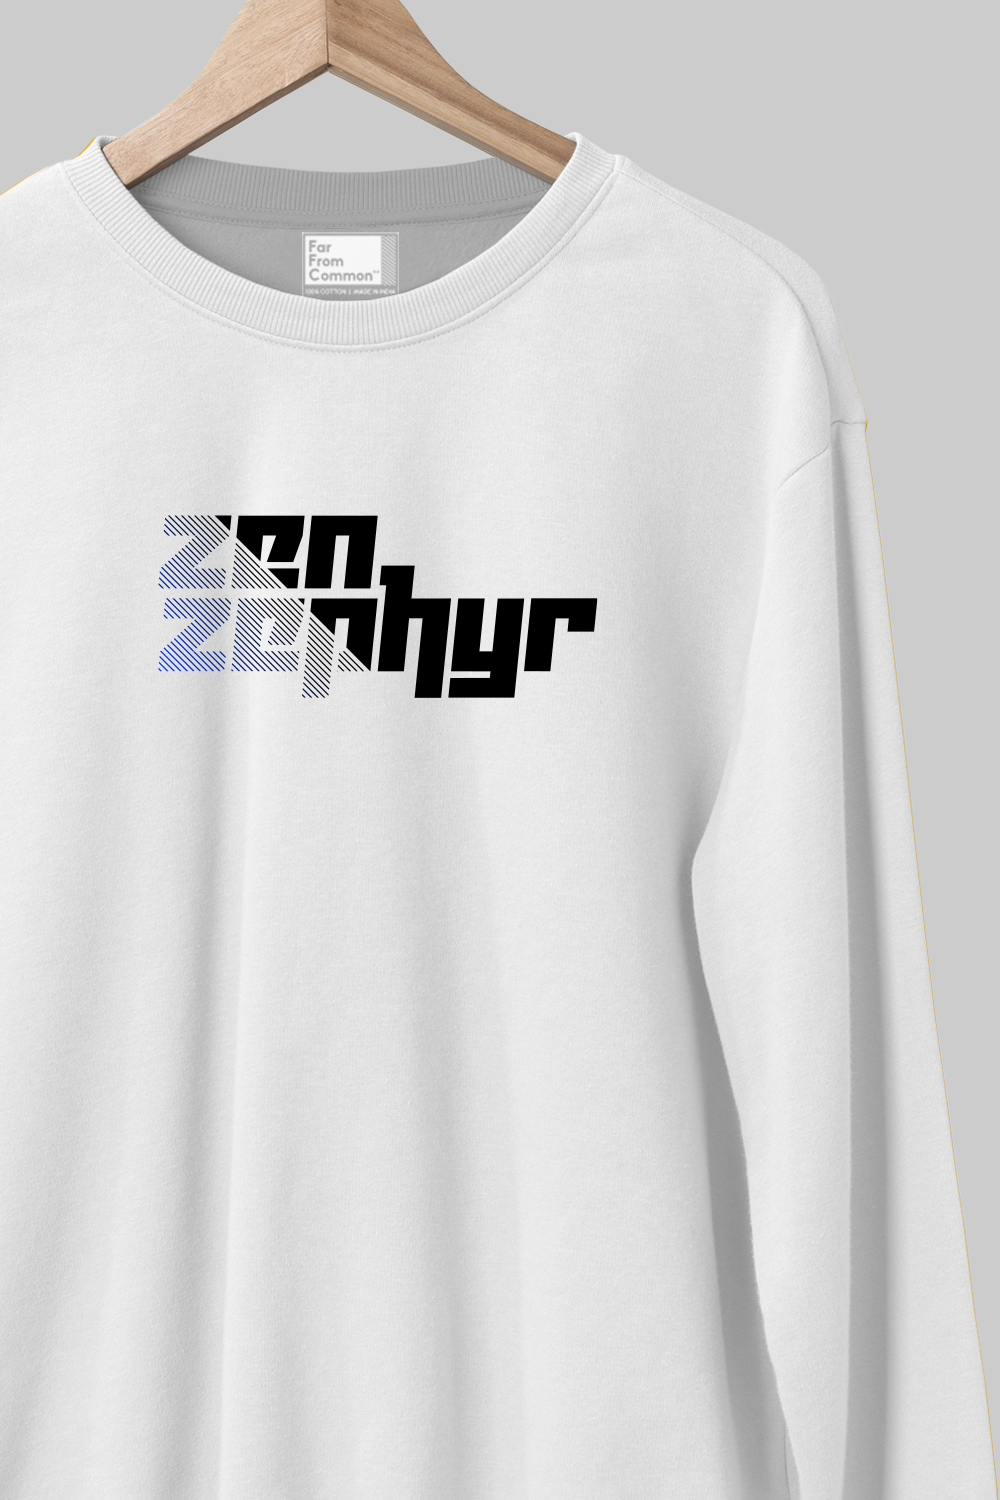 Zen Zephyr White Sweatshirt